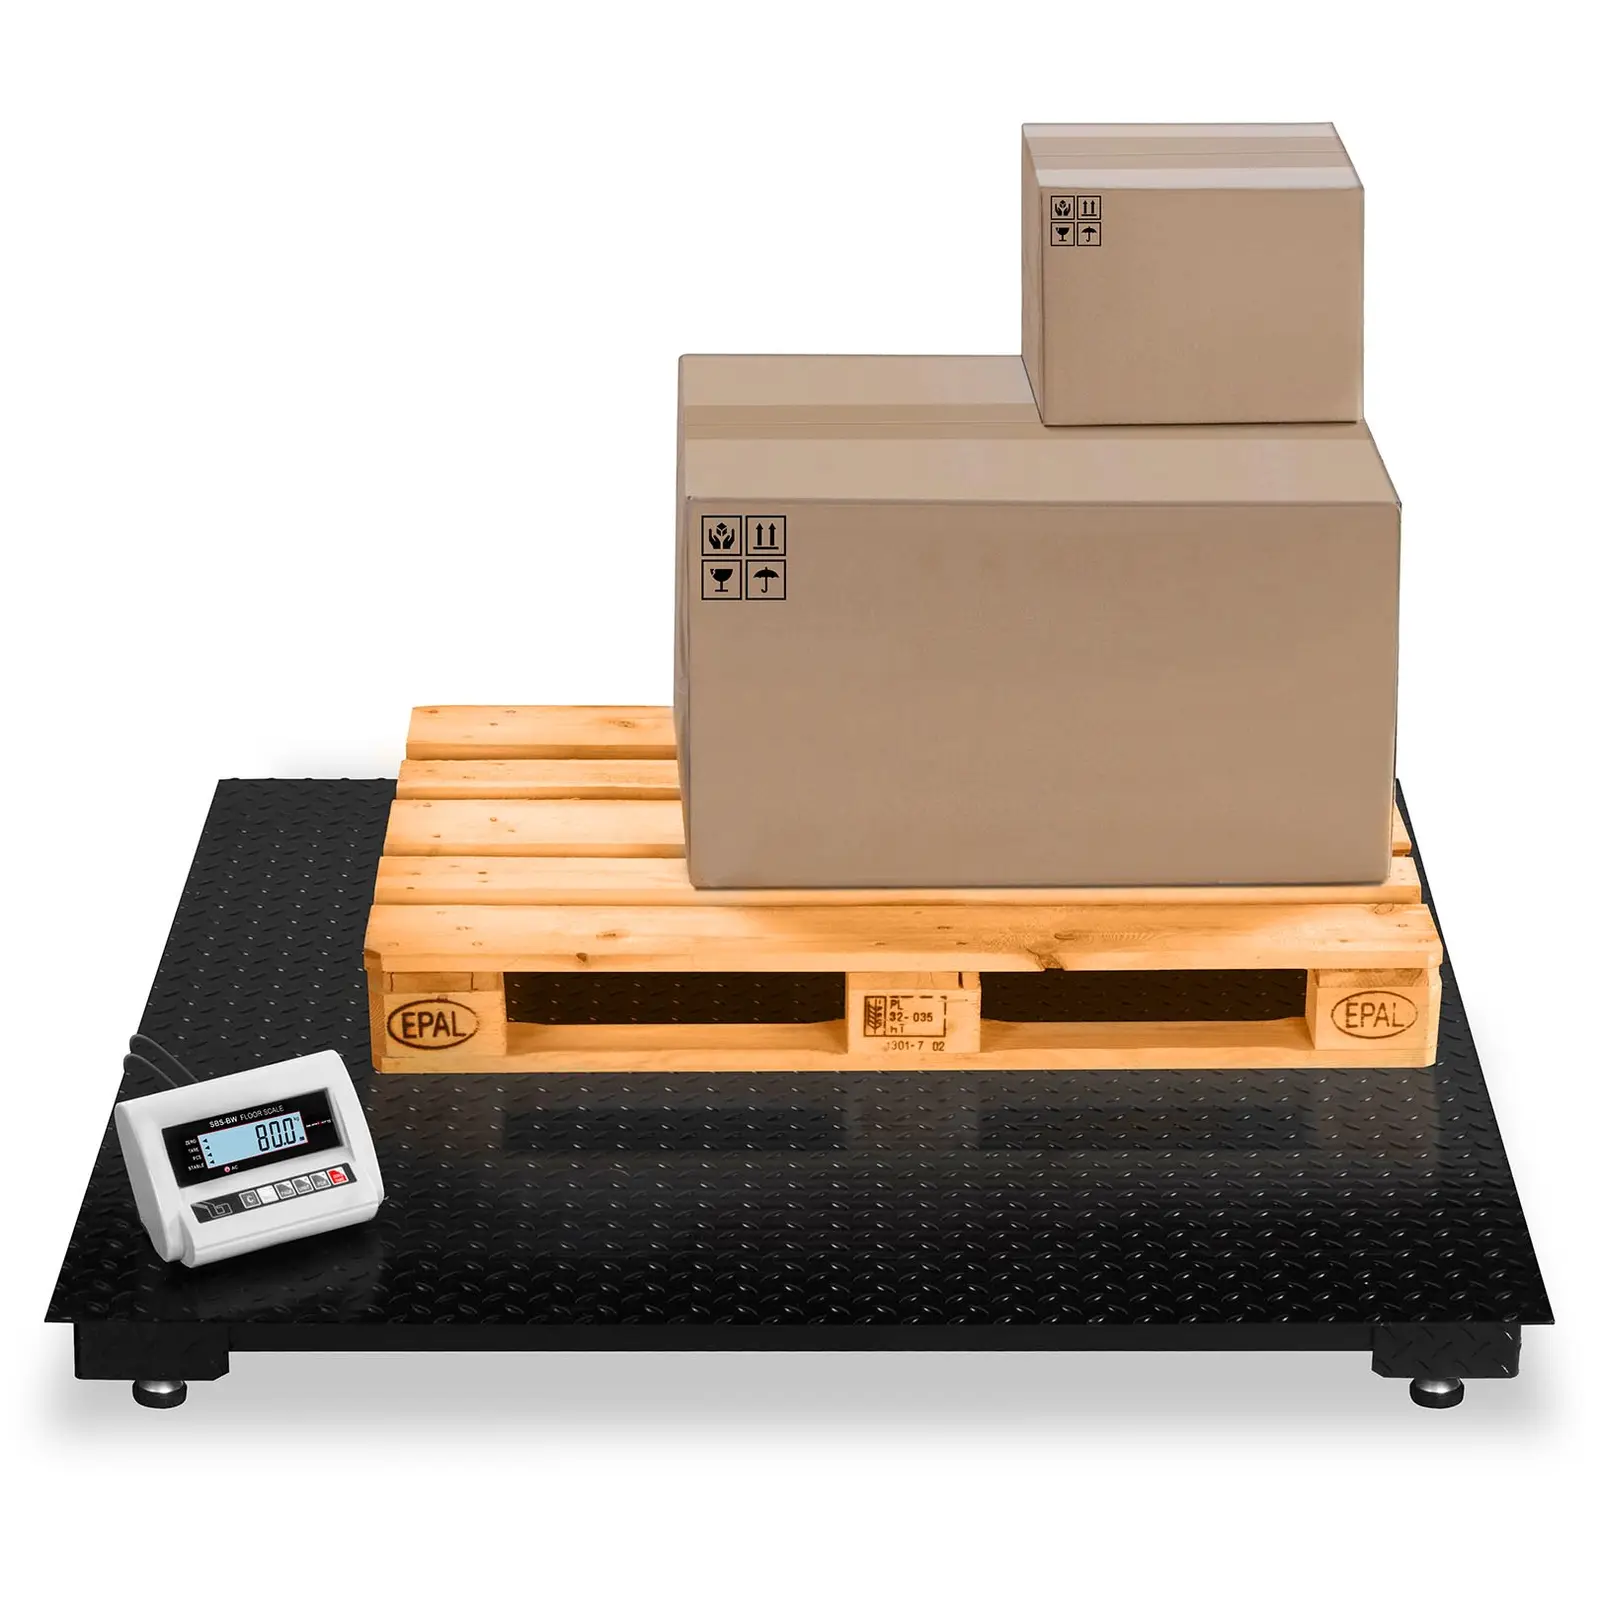 Podlahová váha -5 t / 2 kg -LCD - Podlahové váhy Steinberg Systems